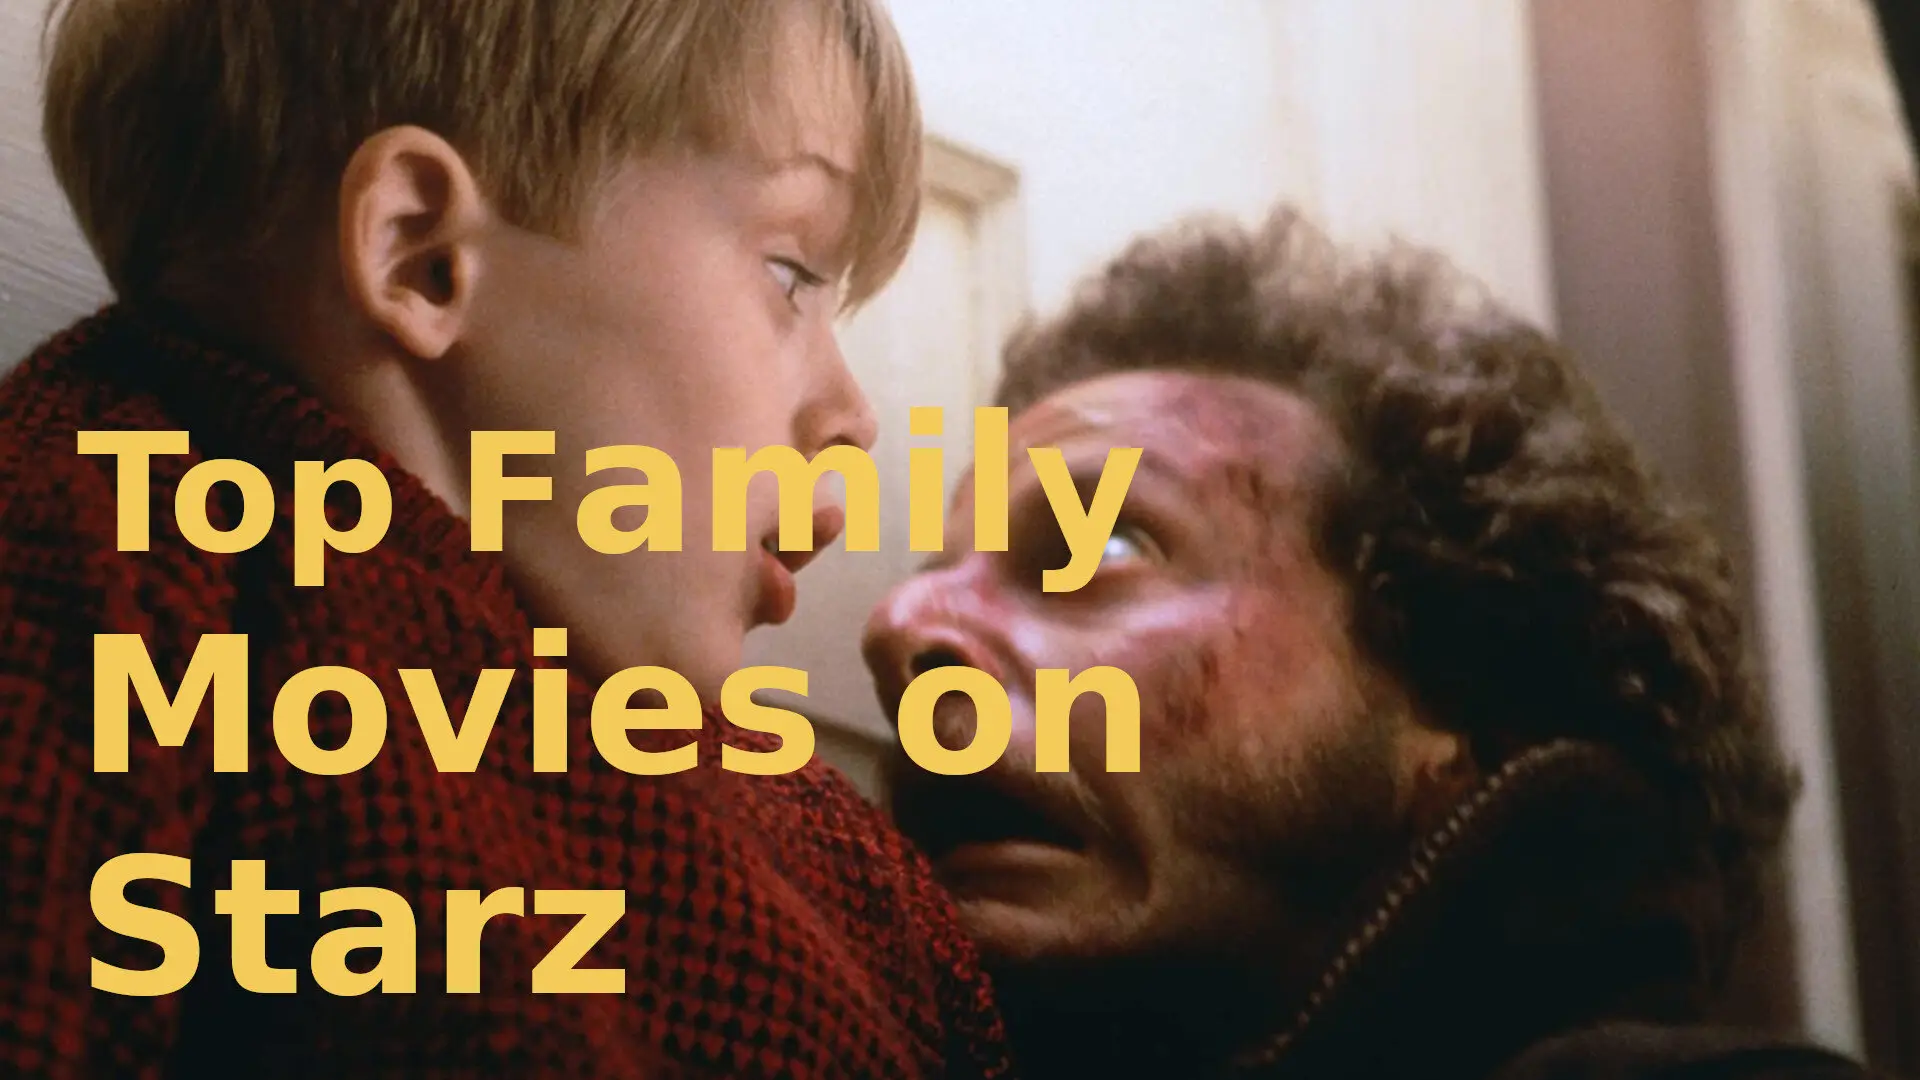 Family Movies on Starz